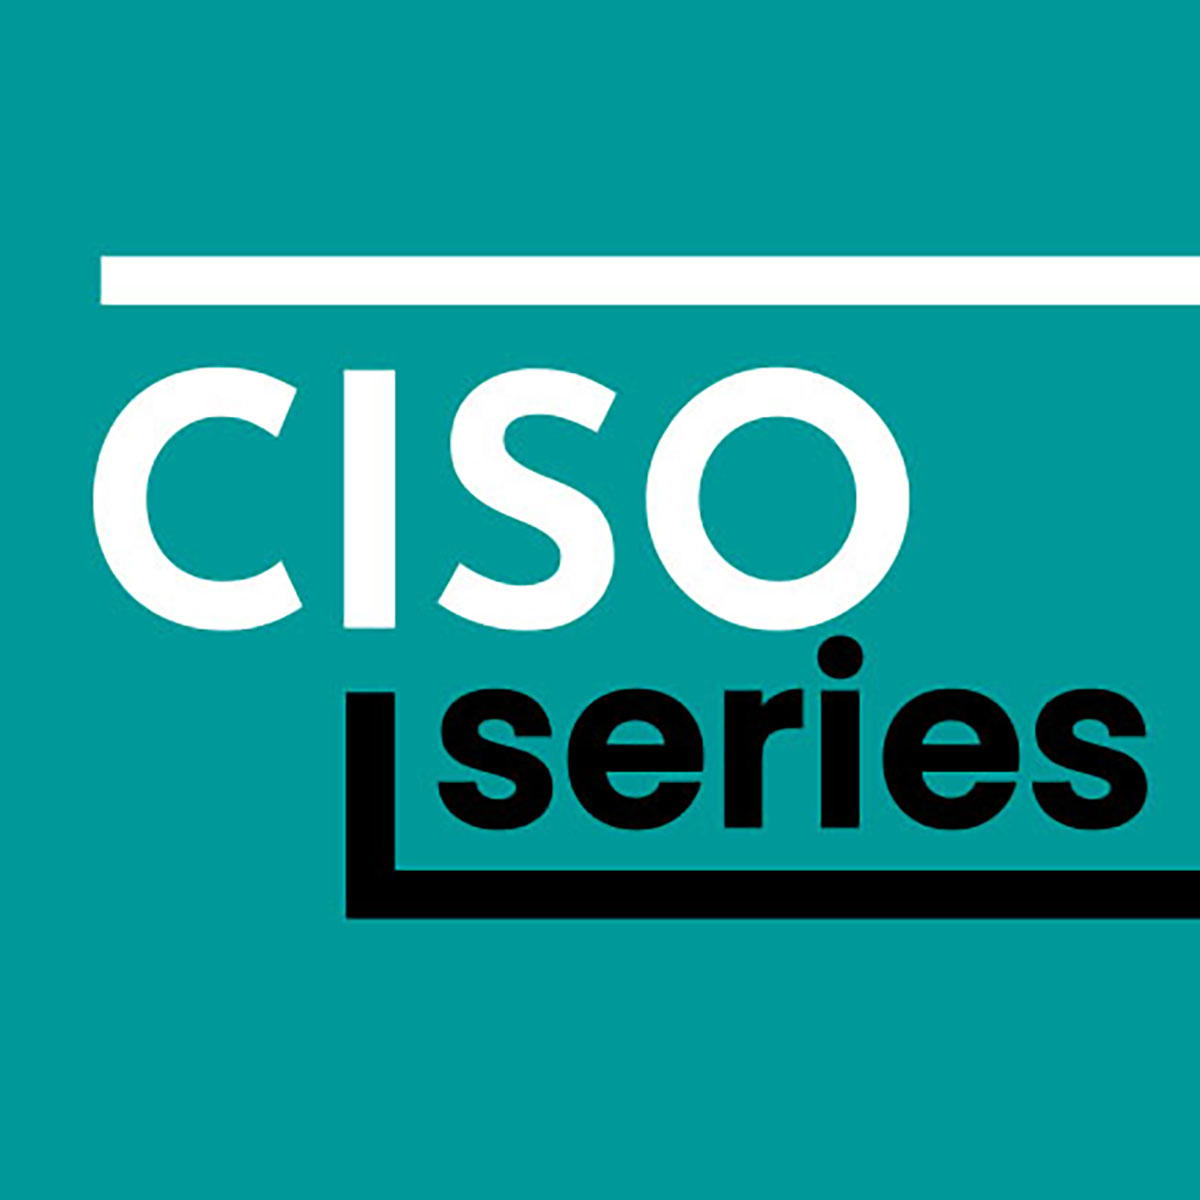 CISO Series logo